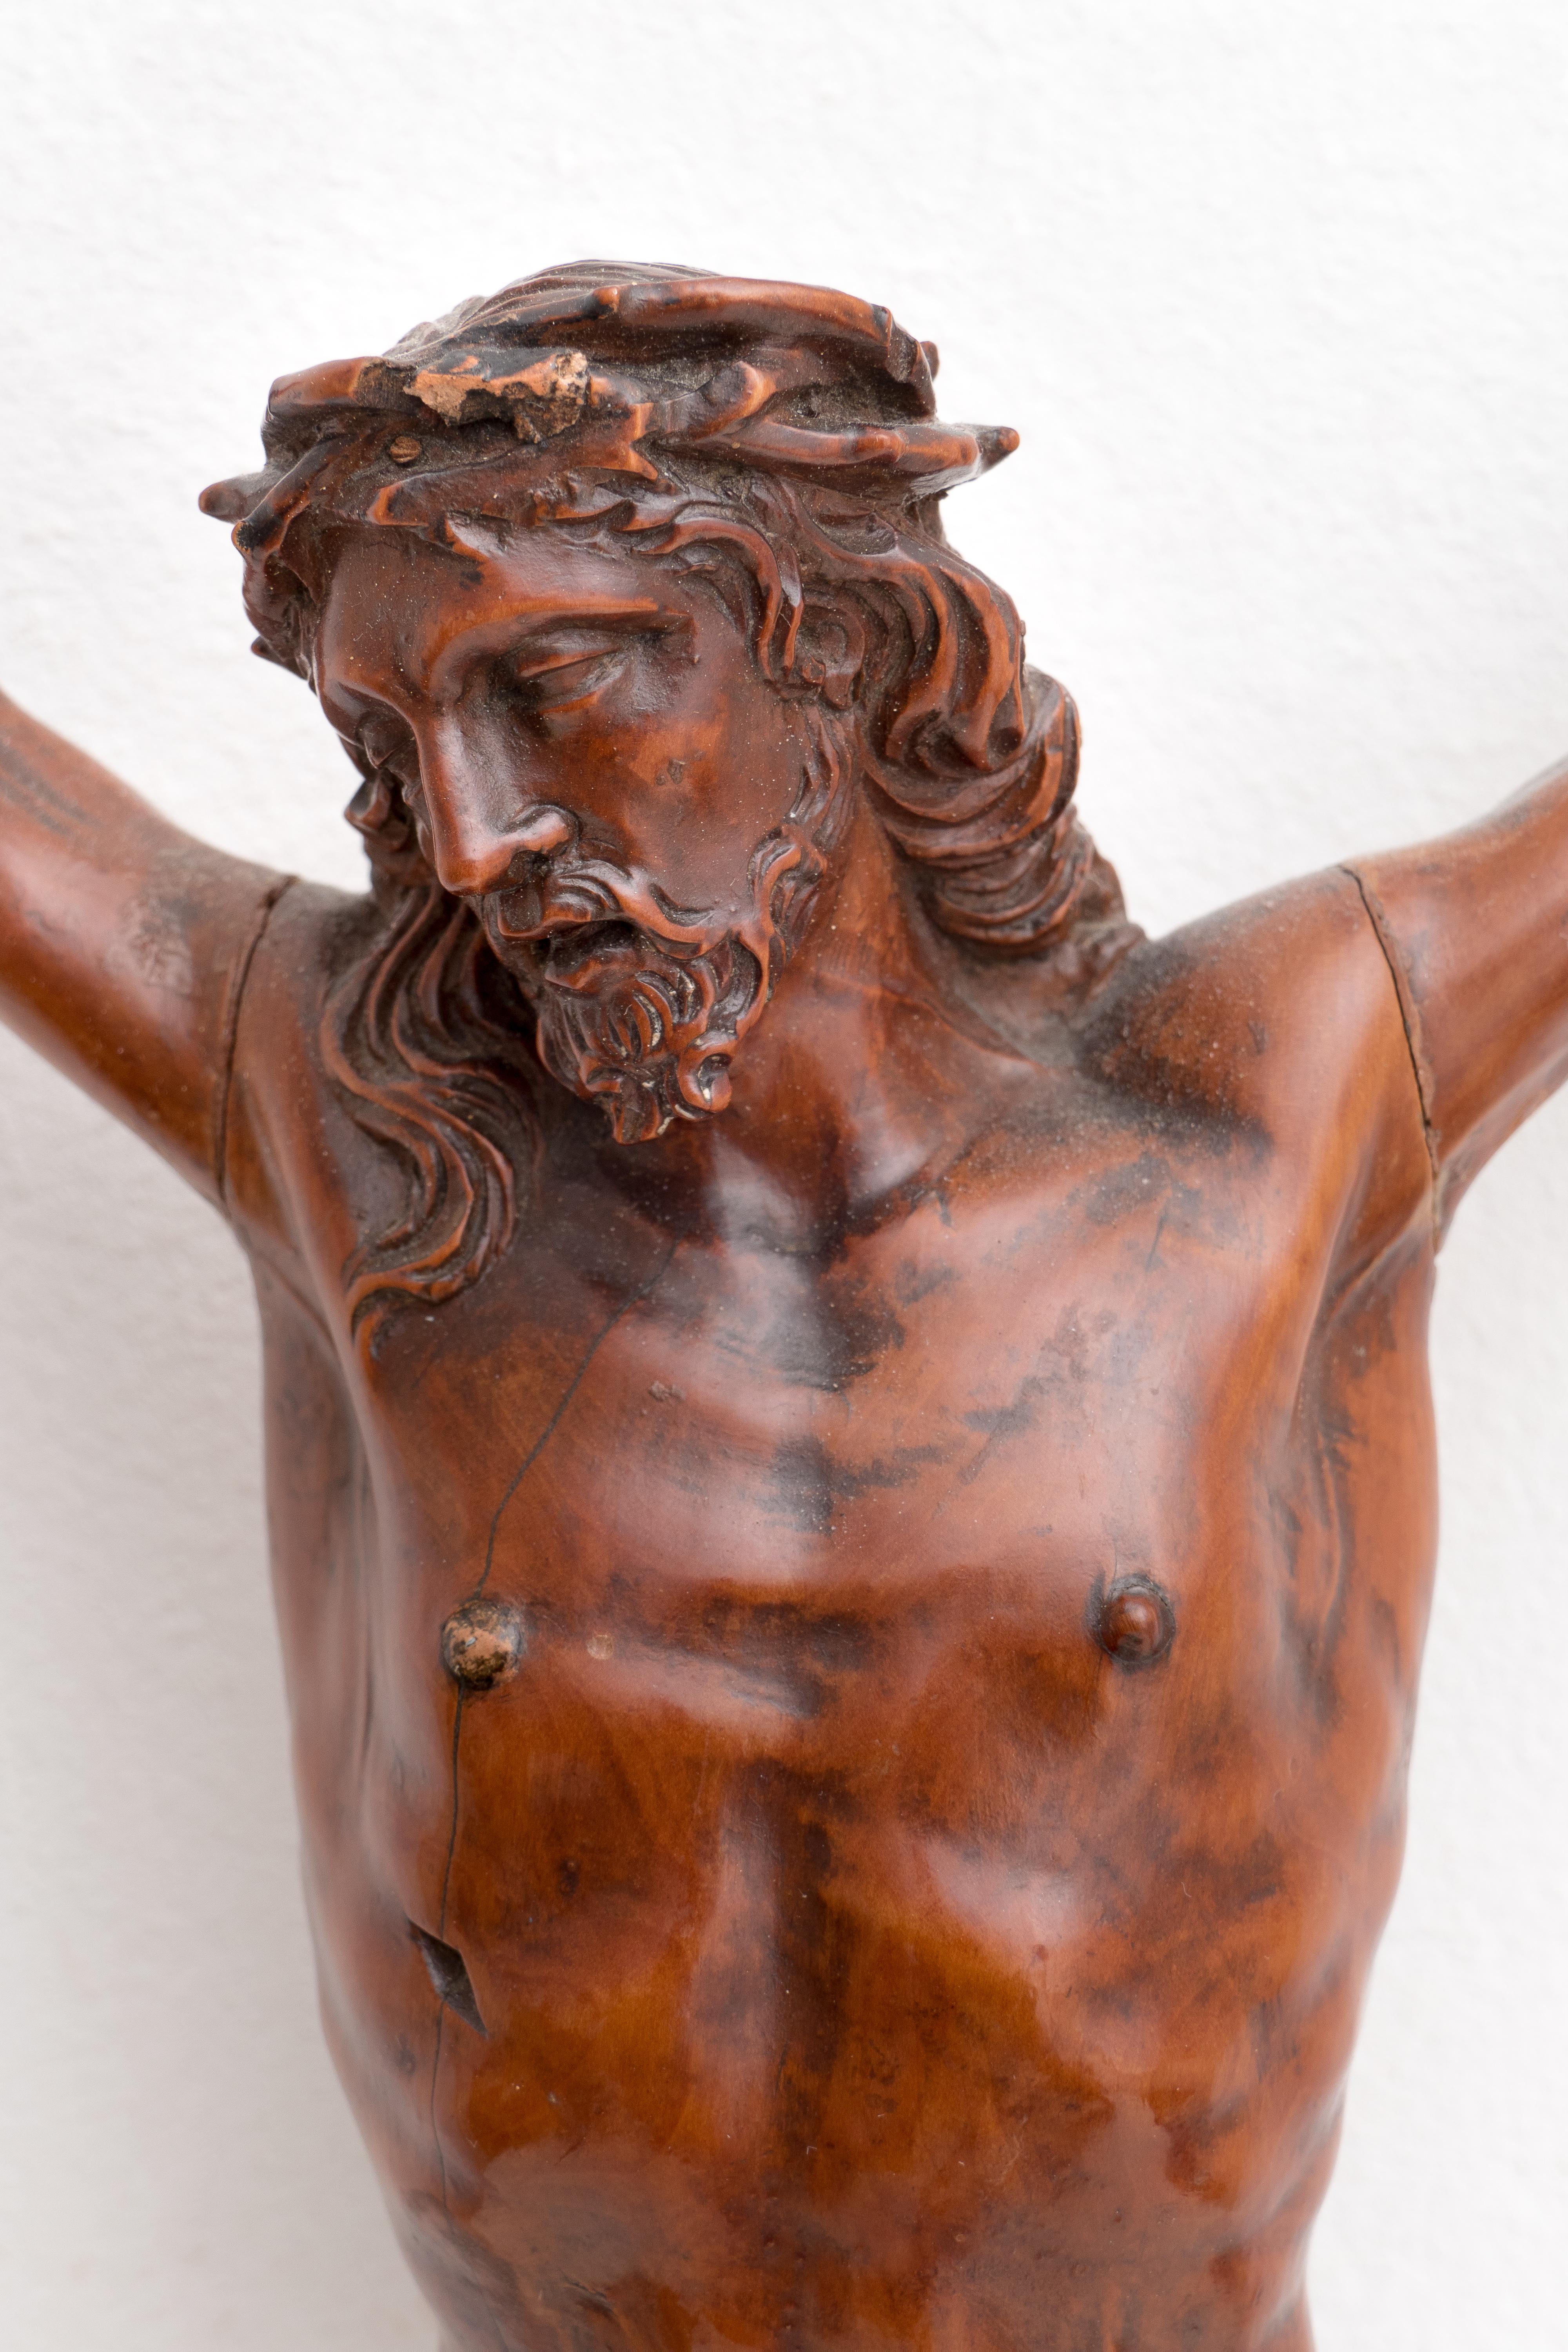 ANTIQUE italienische BOXWOOD SculPTURE OF CHRIST aus dem 18. Jh. (Braun), Figurative Sculpture, von Unknown